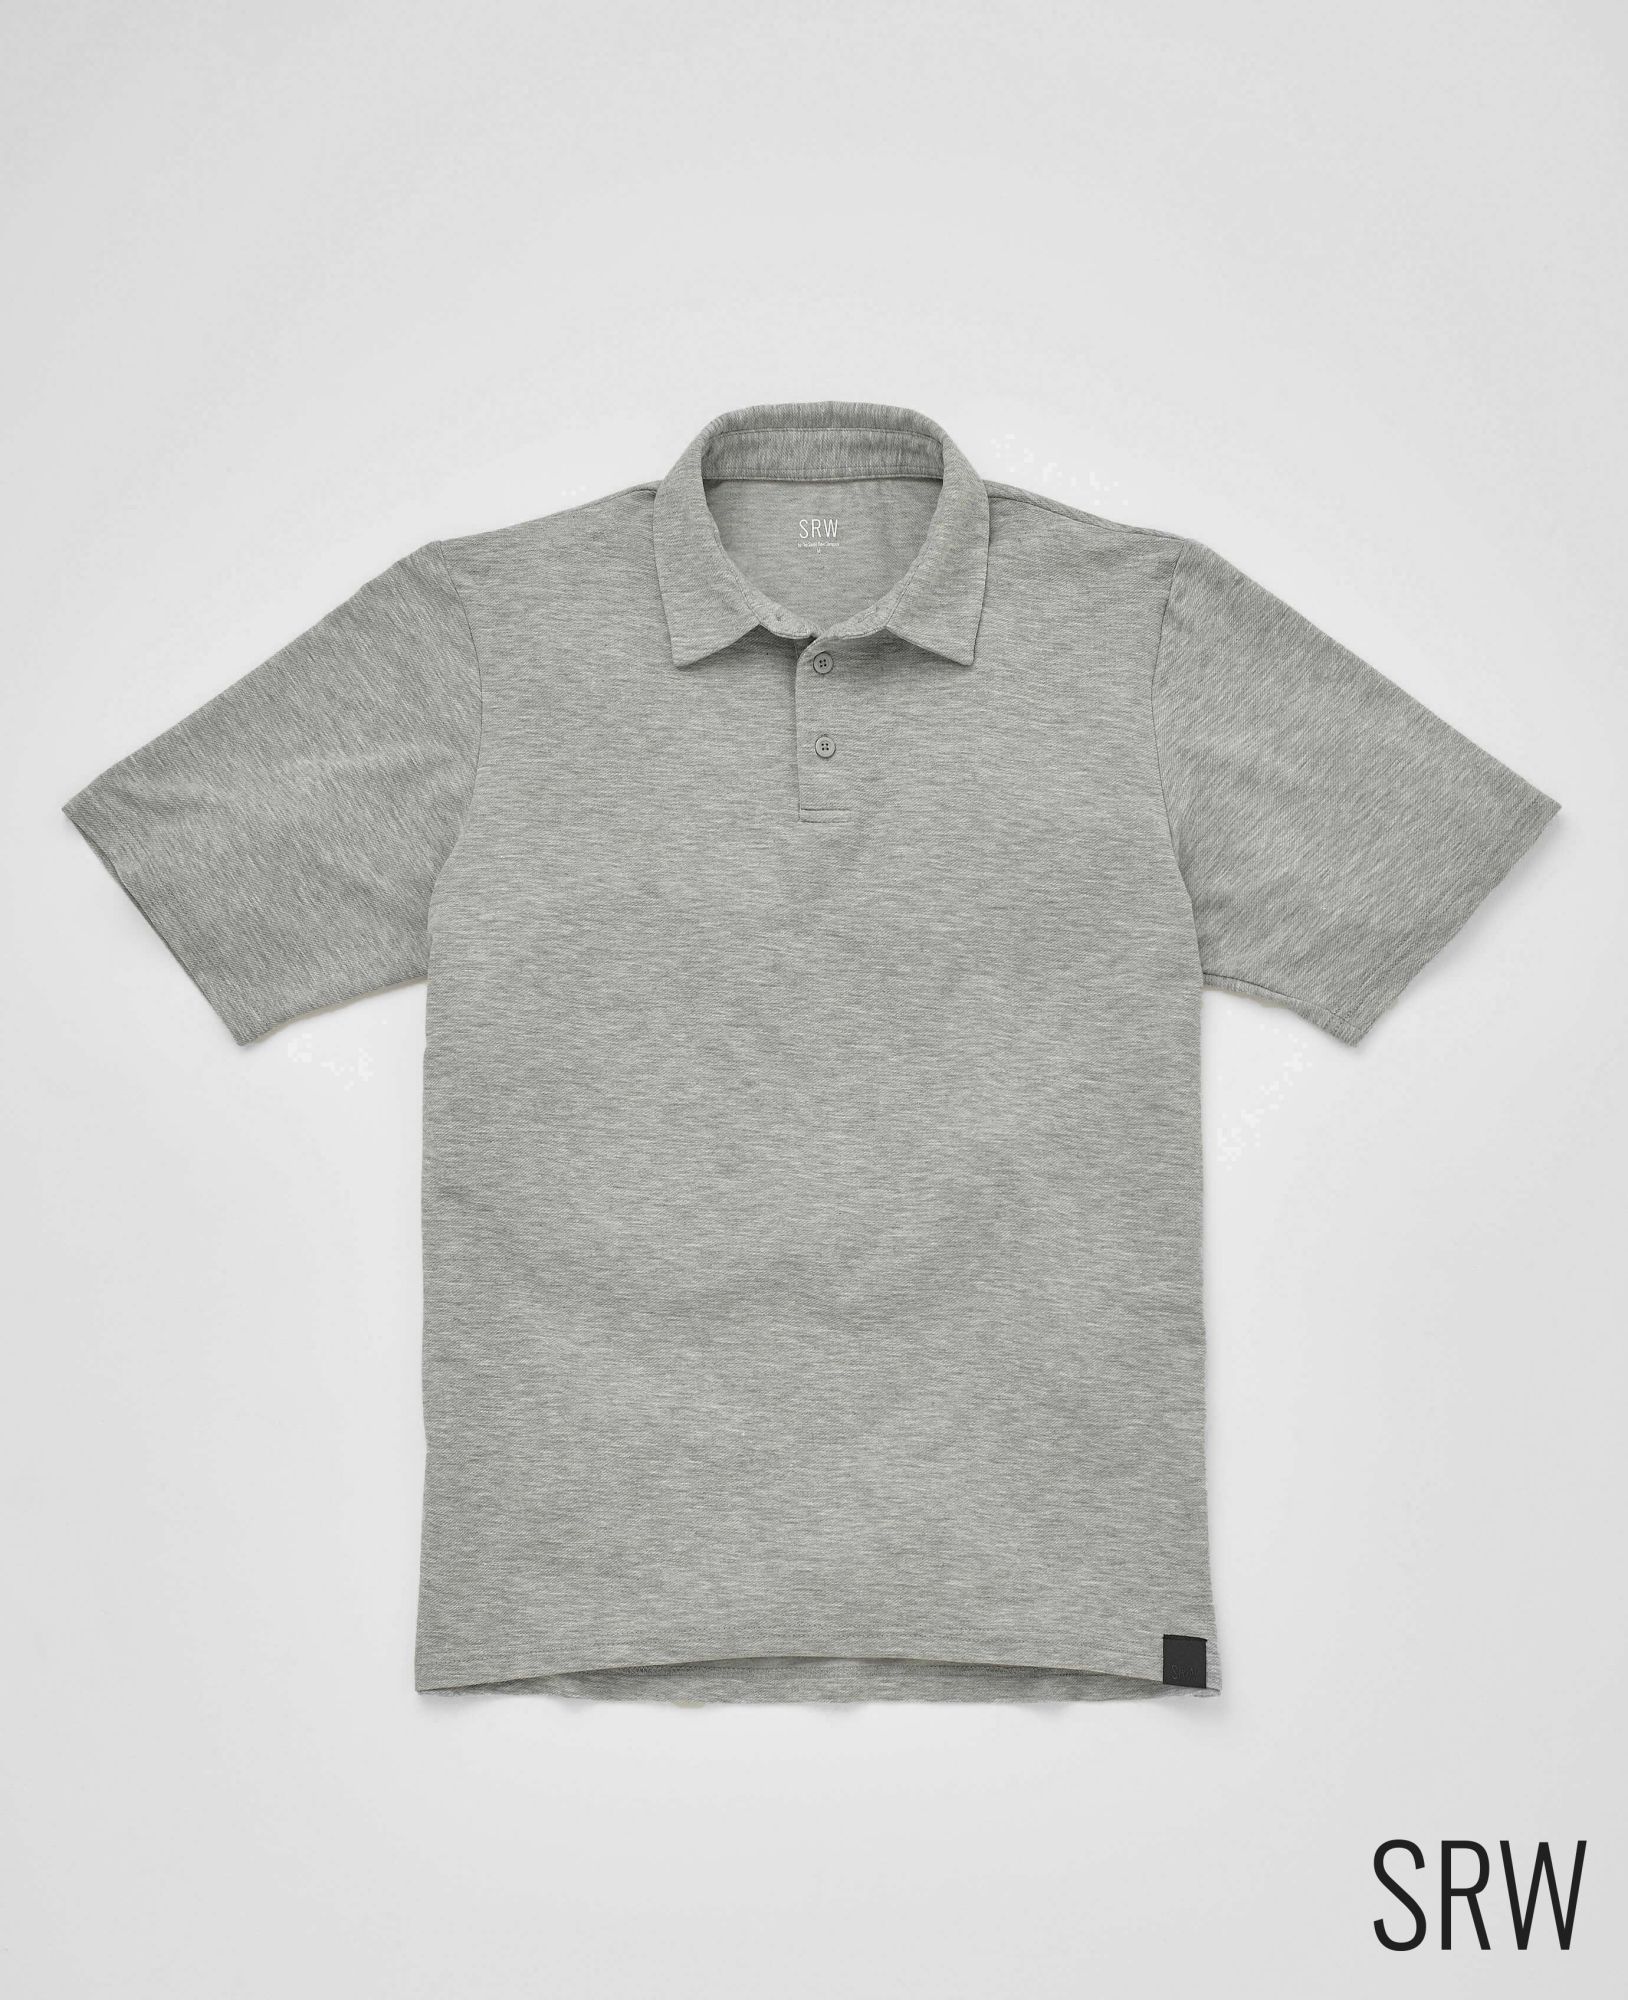 SRW Active Non-Iron Marl Grey Short Sleeve Polo Shirt S